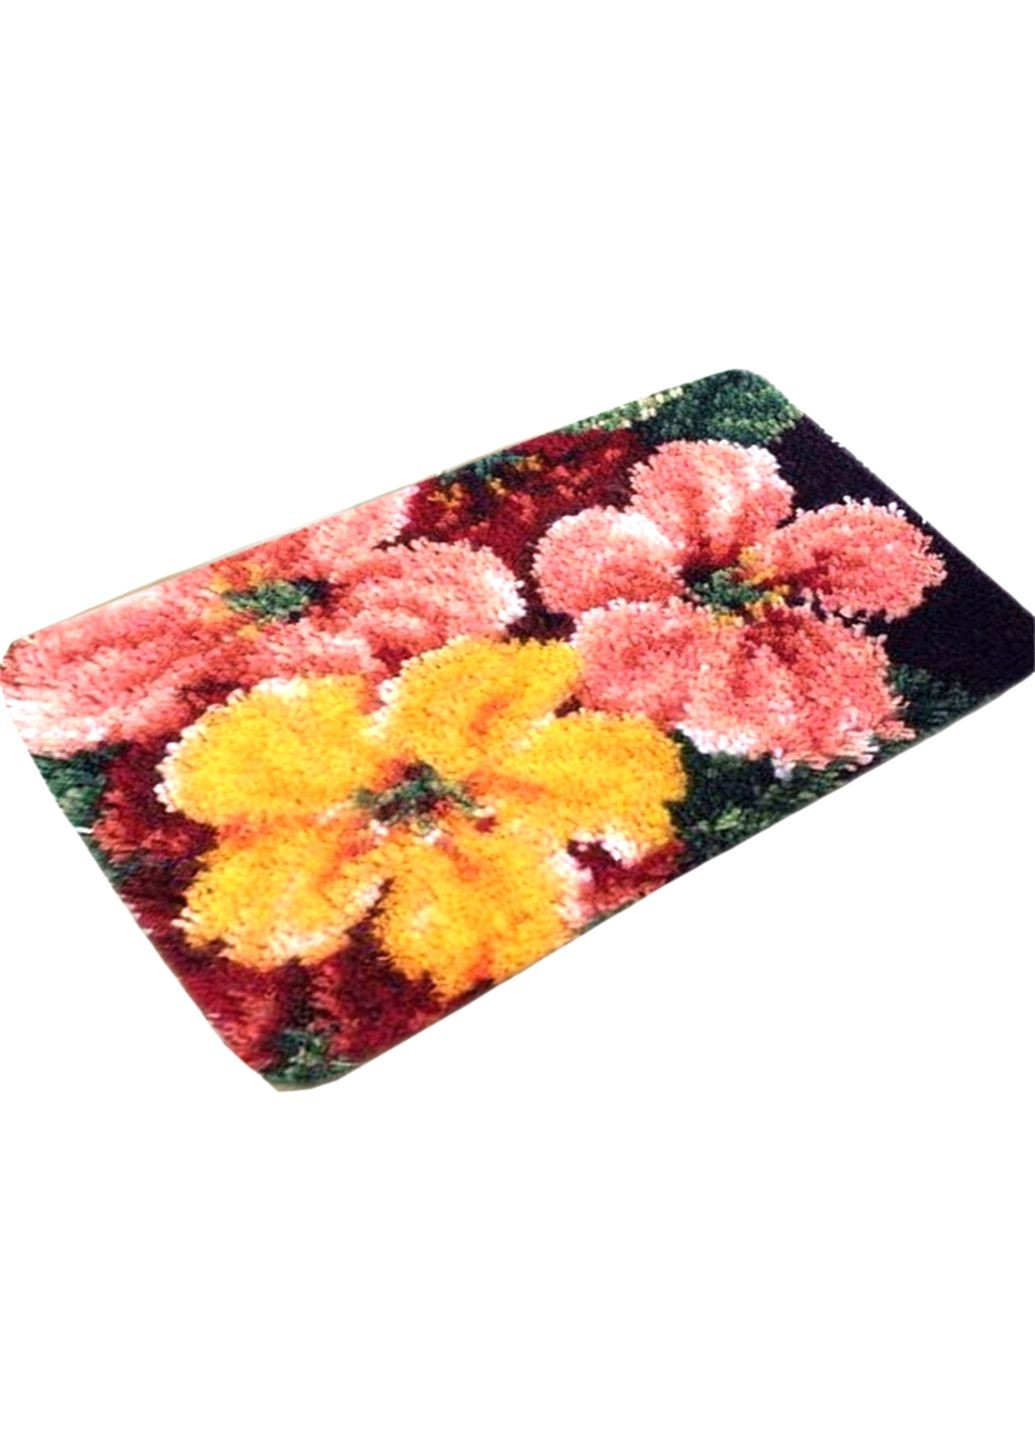 Набор для ковровой вышивки коврик цветы (основа-канва, нити, крючок для ковровой вышивки) No Brand 4463 (293943060)